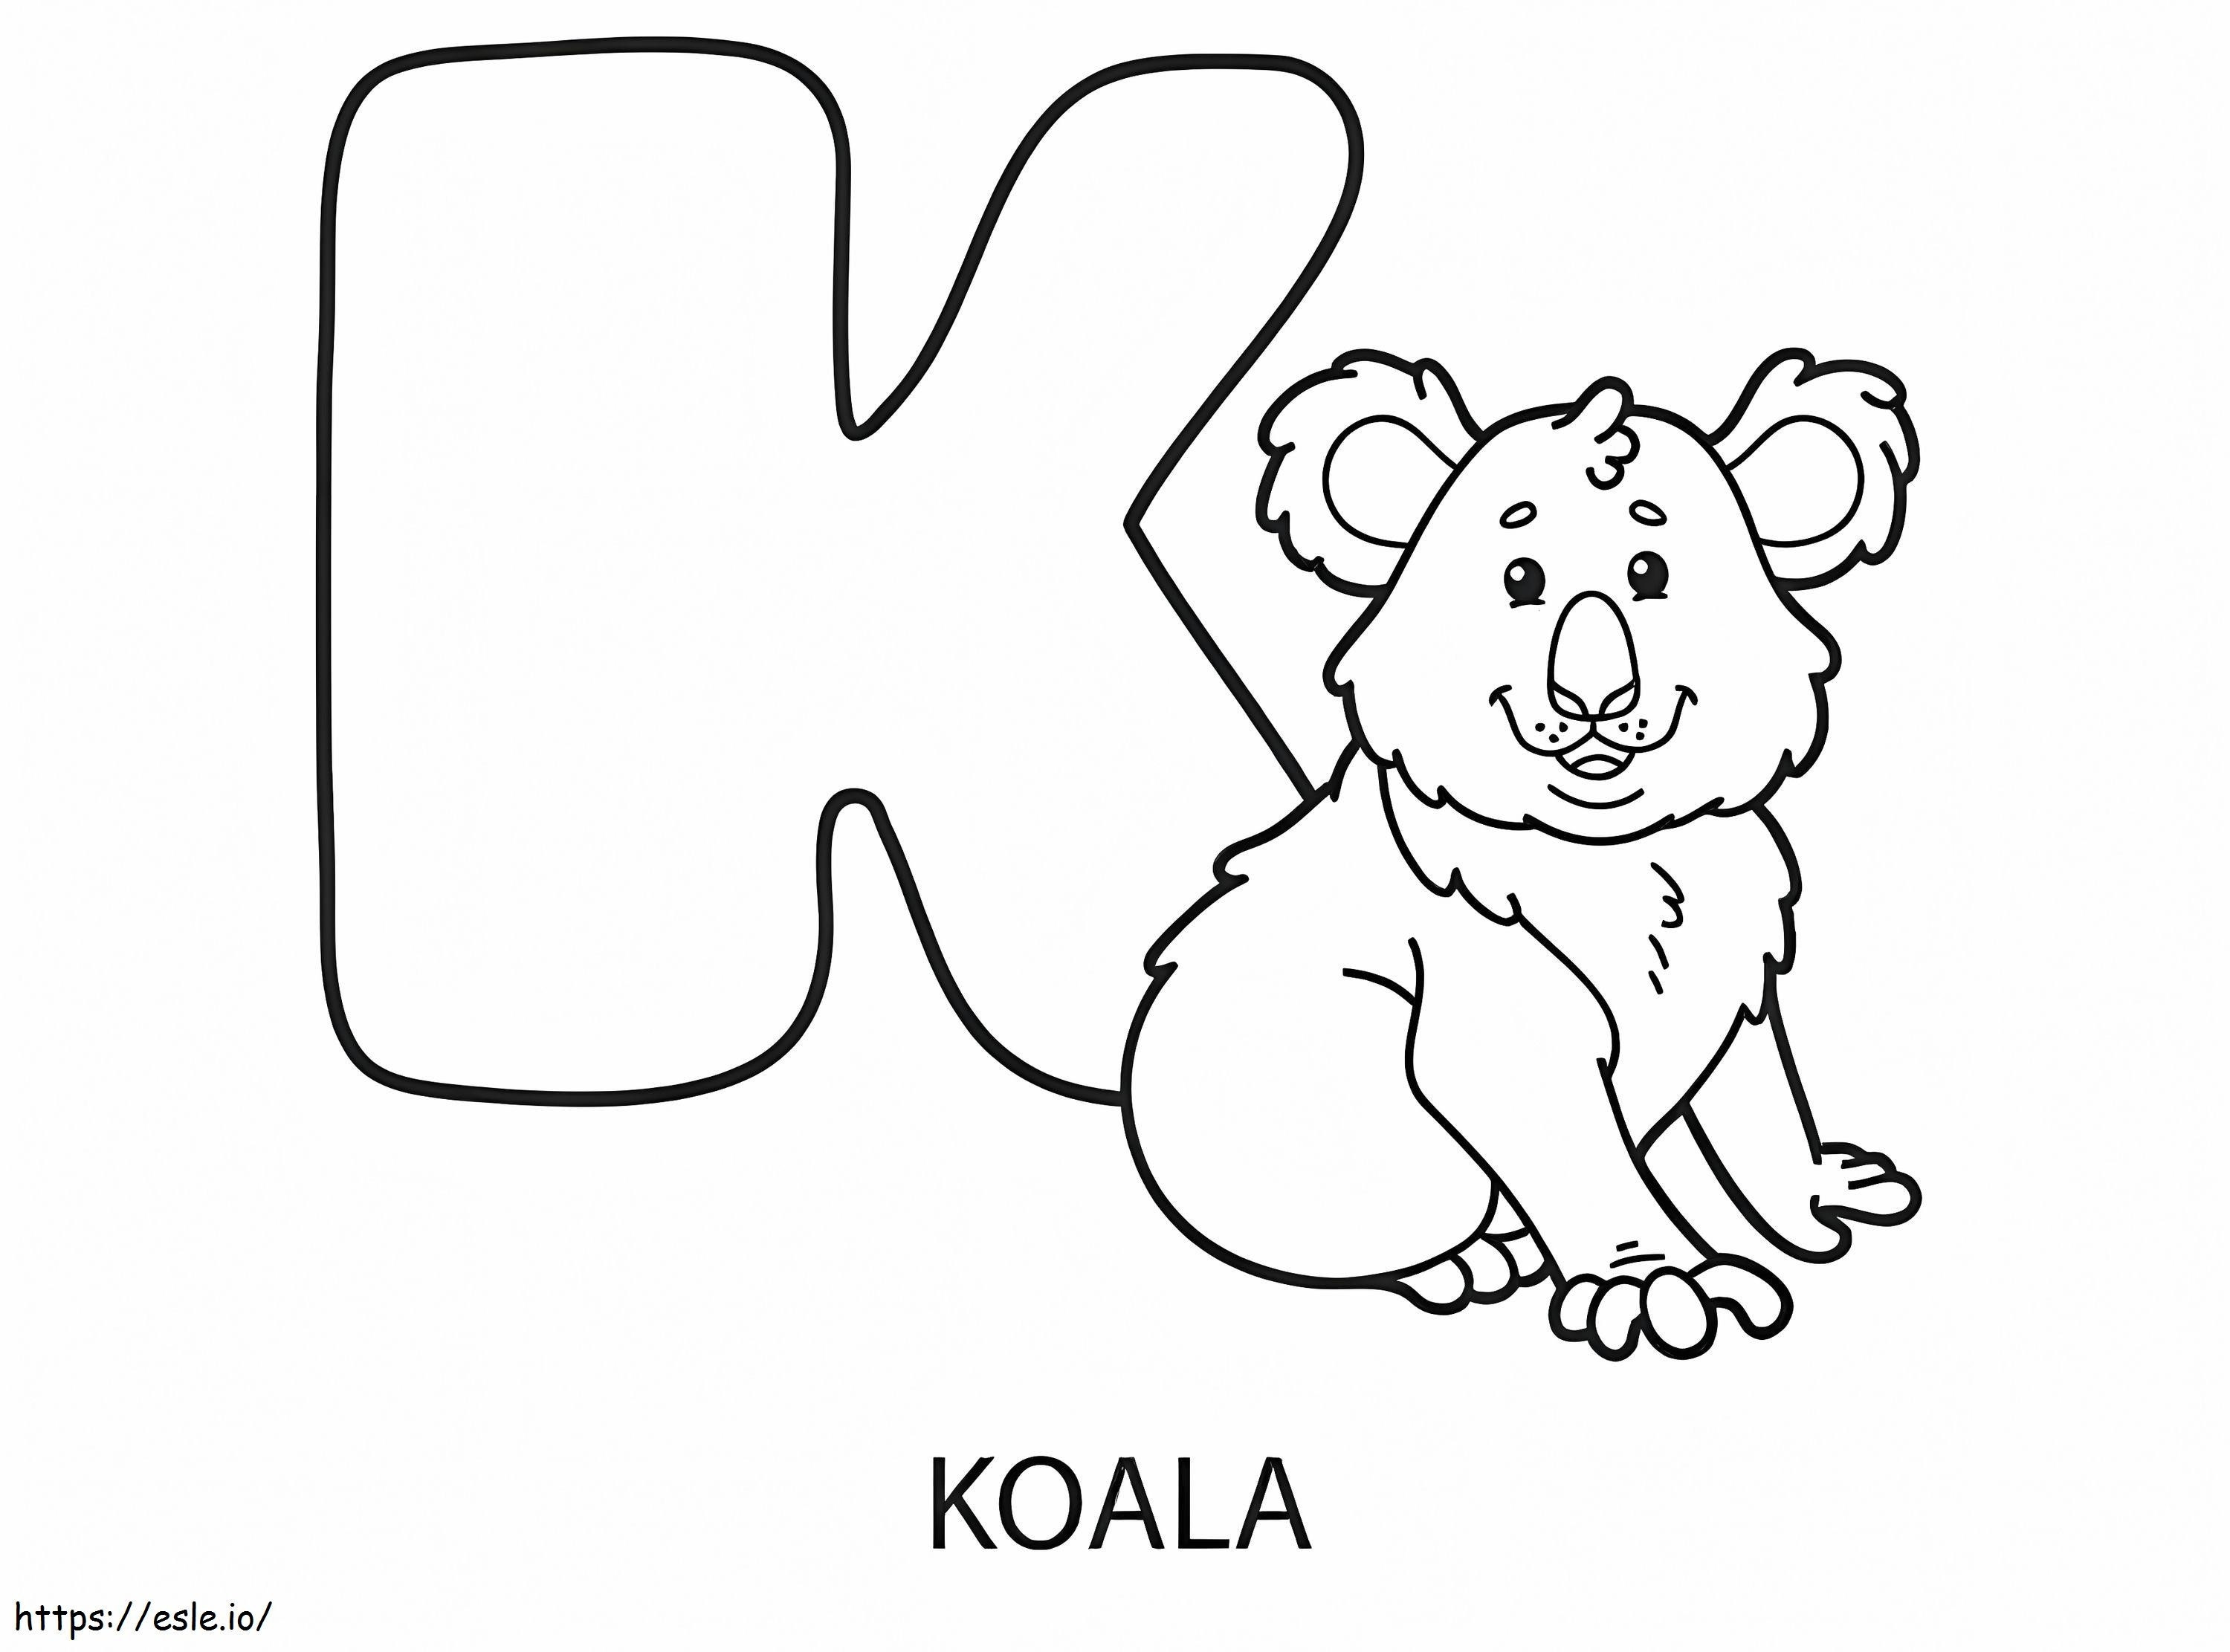 K harfi ve Koala boyama